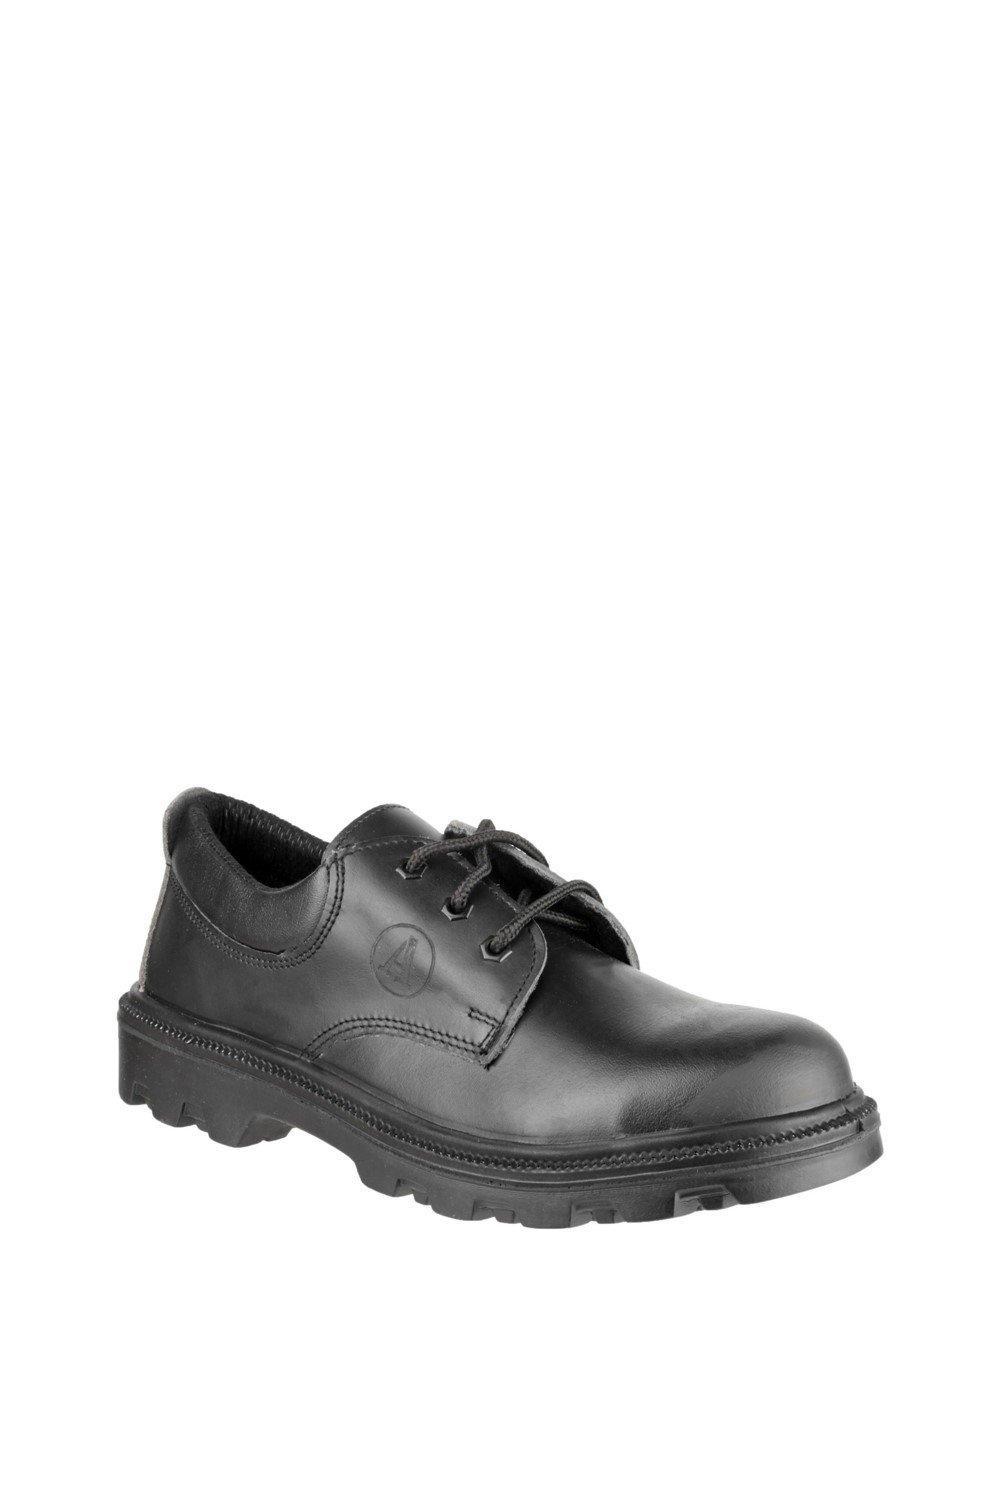 цена Защитная обувь 'FS133' Amblers Safety, черный